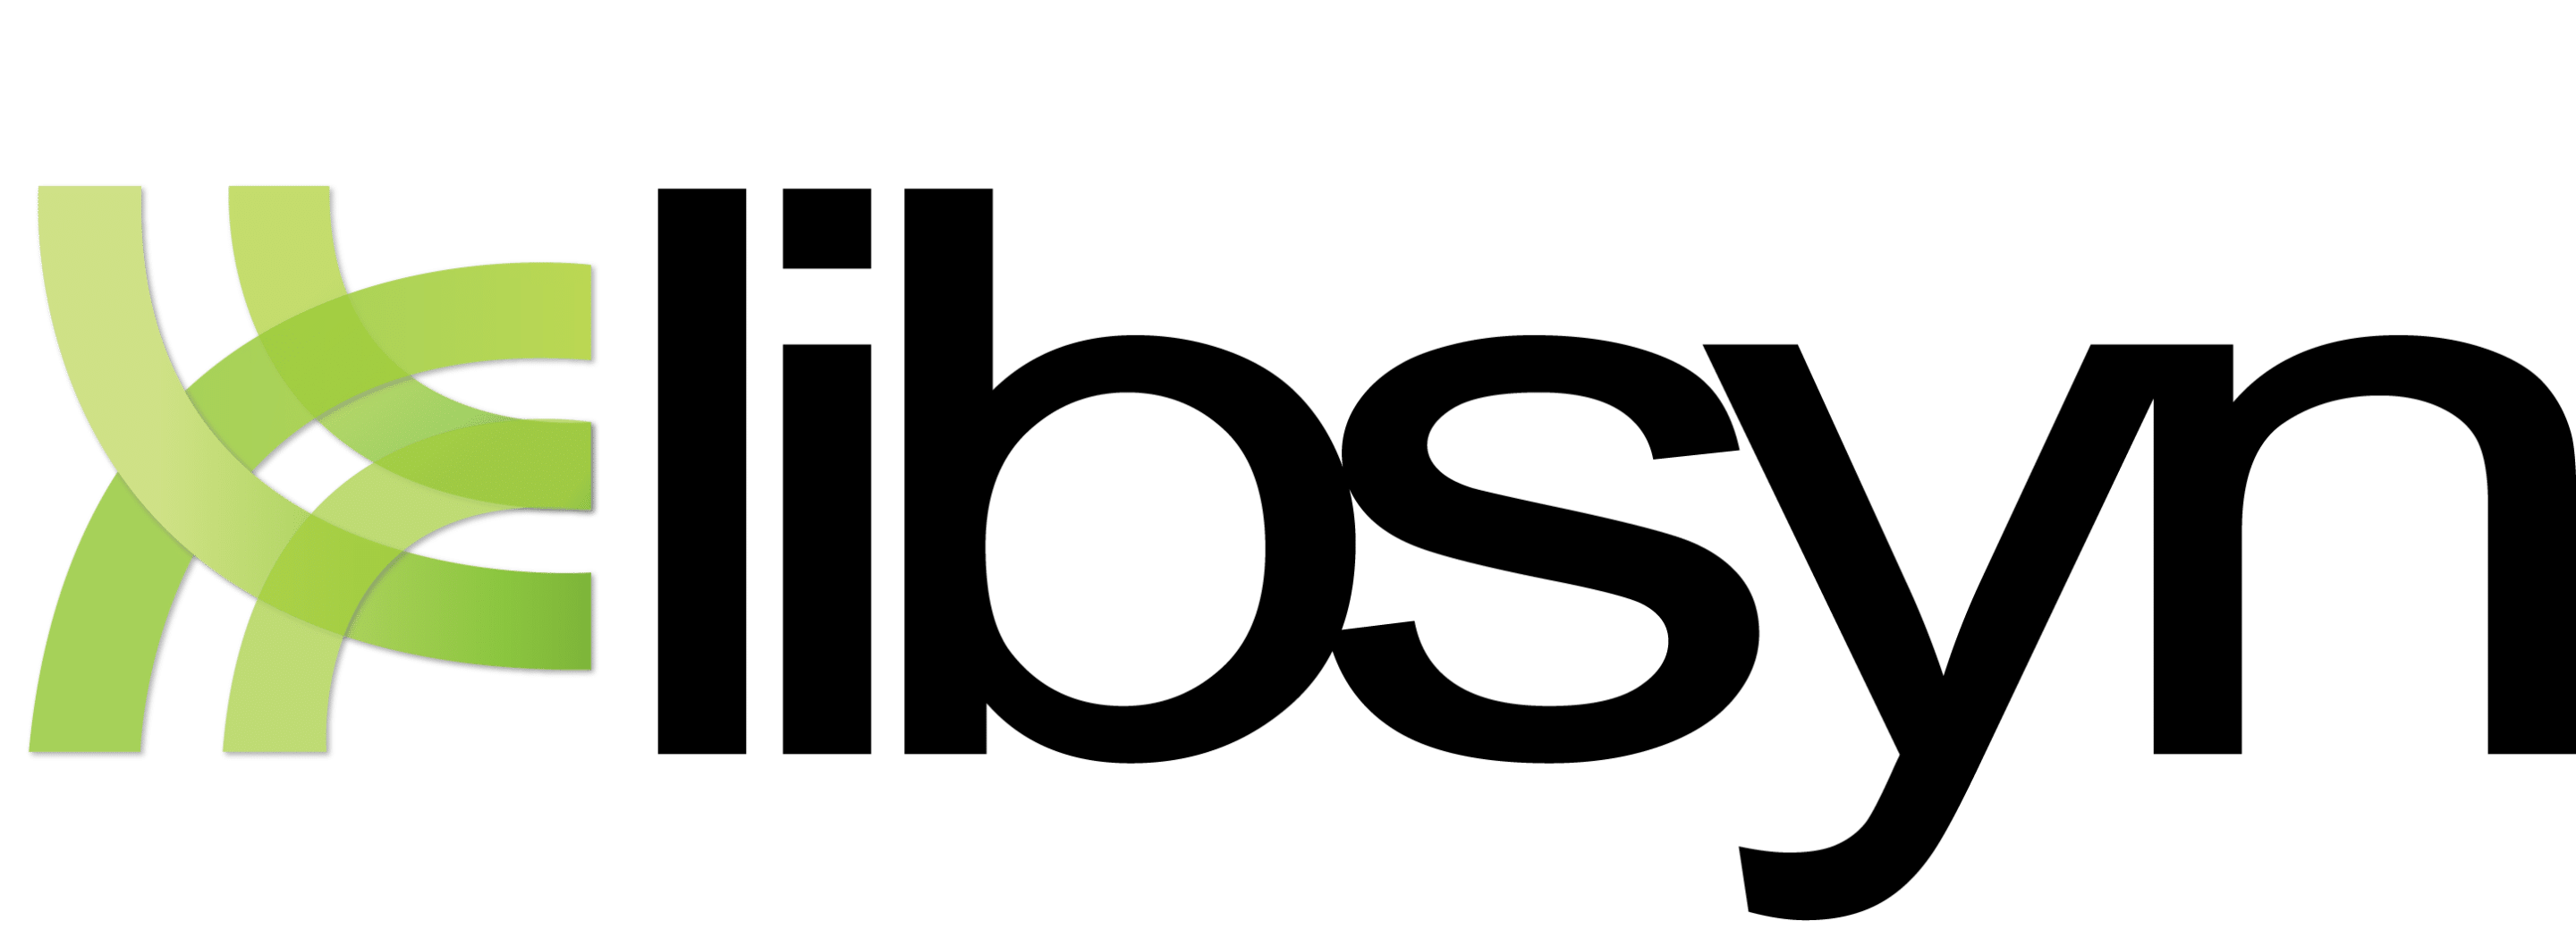 Libsyn Logo